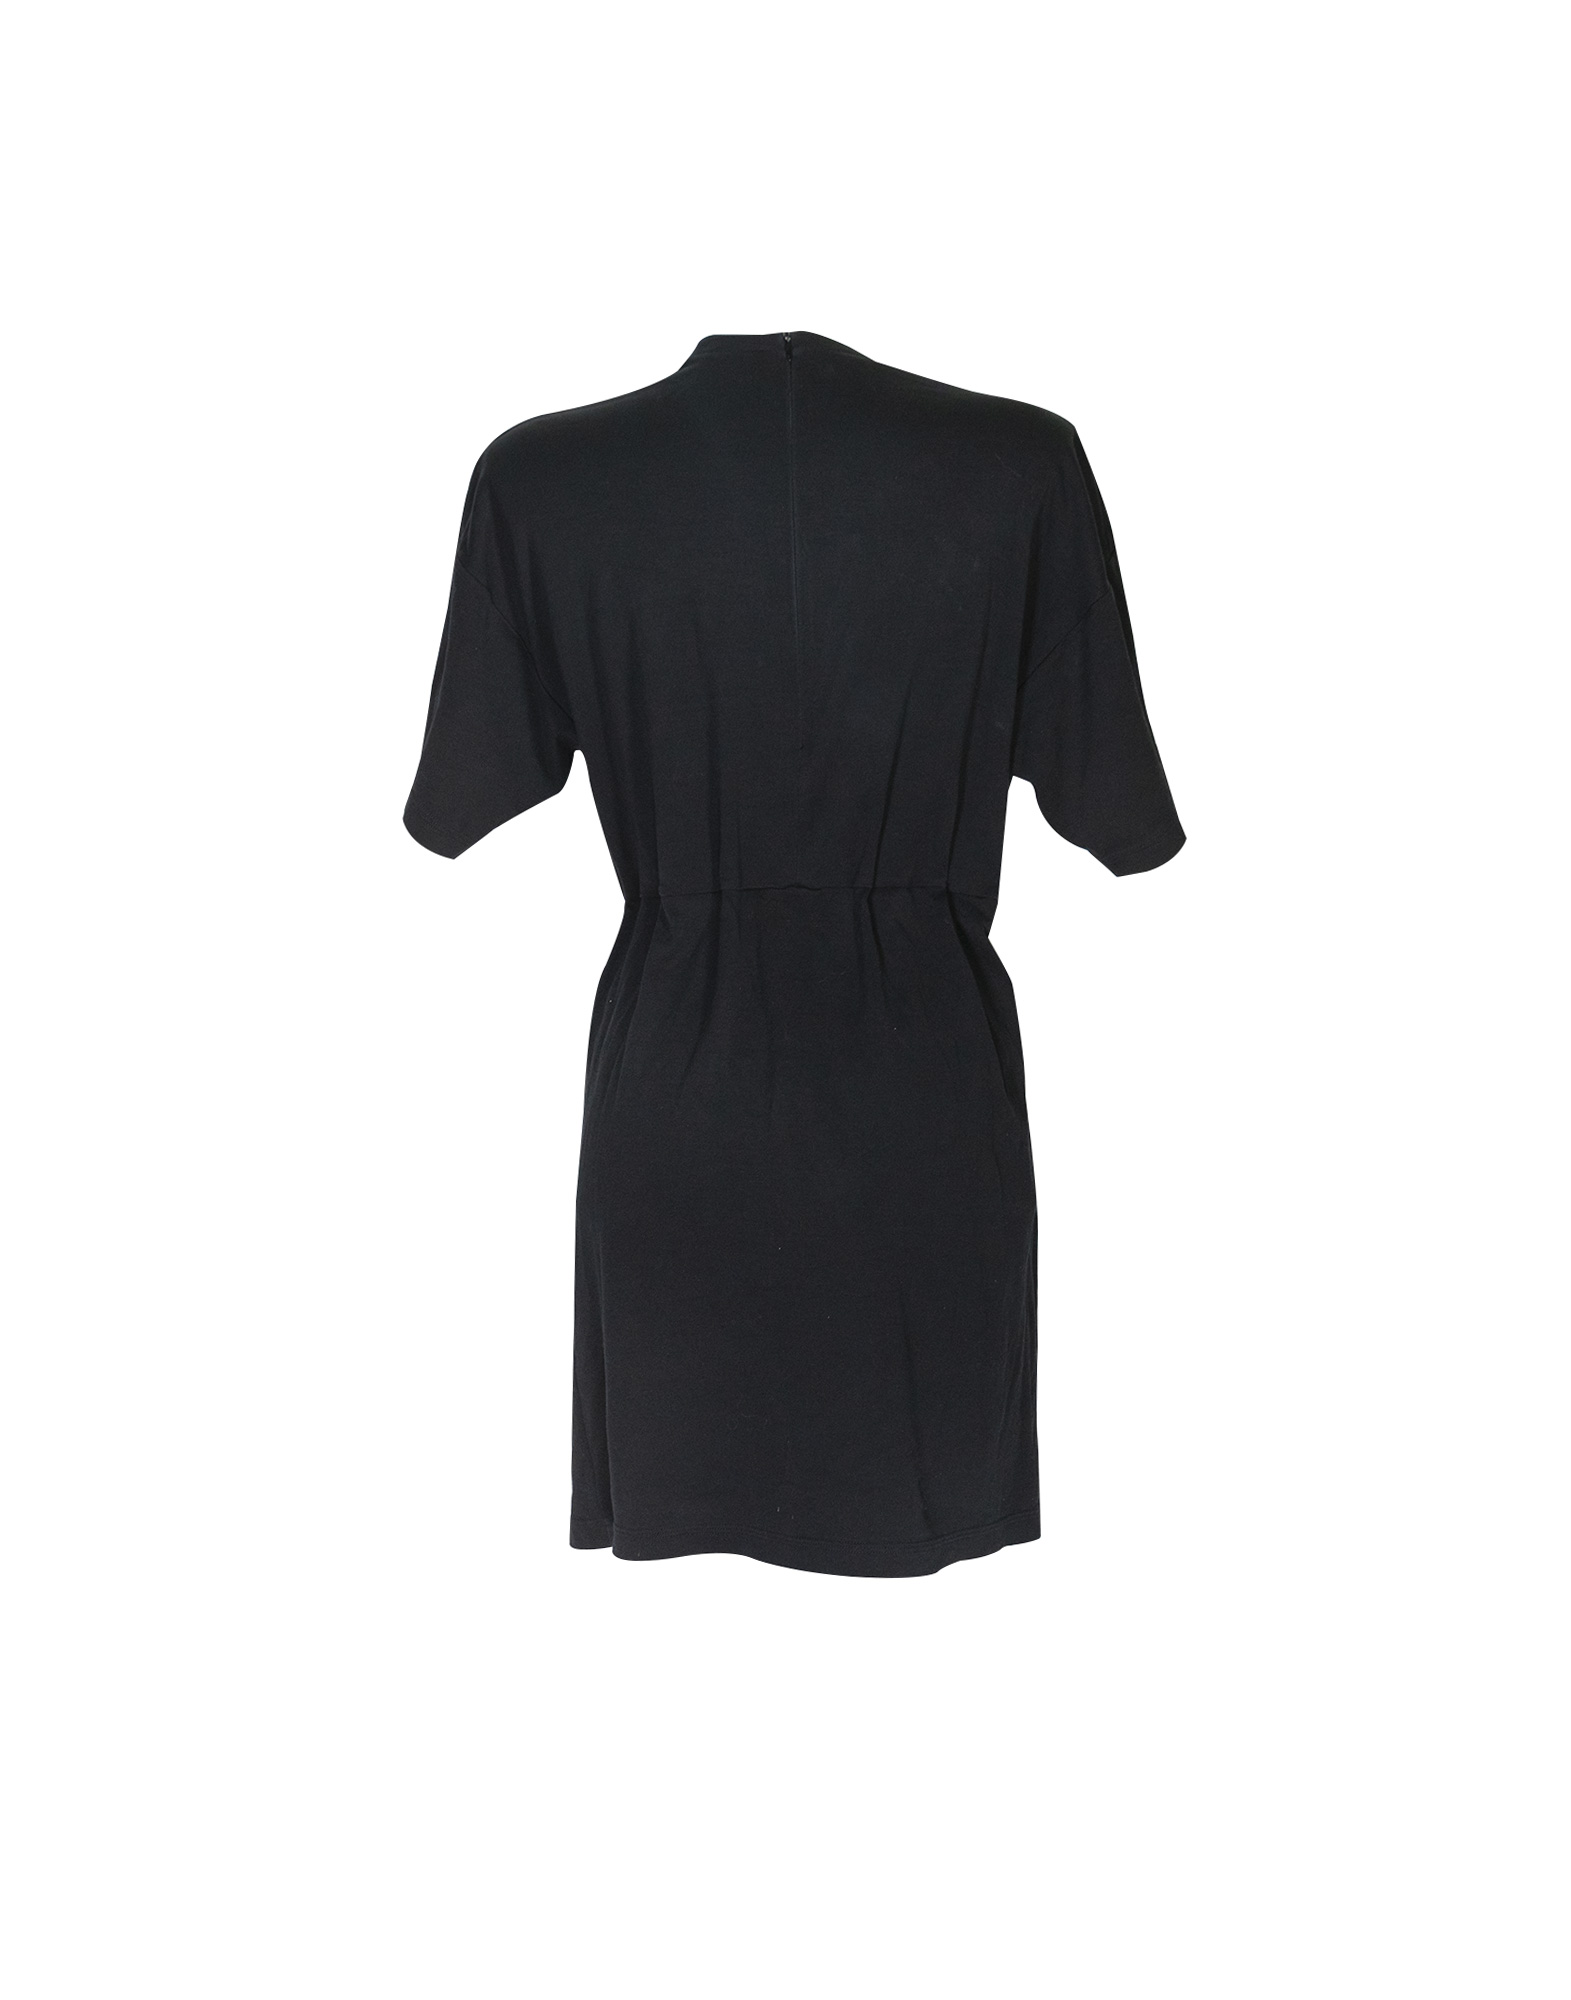 Louis Vuitton - Black cotton uniforms dress